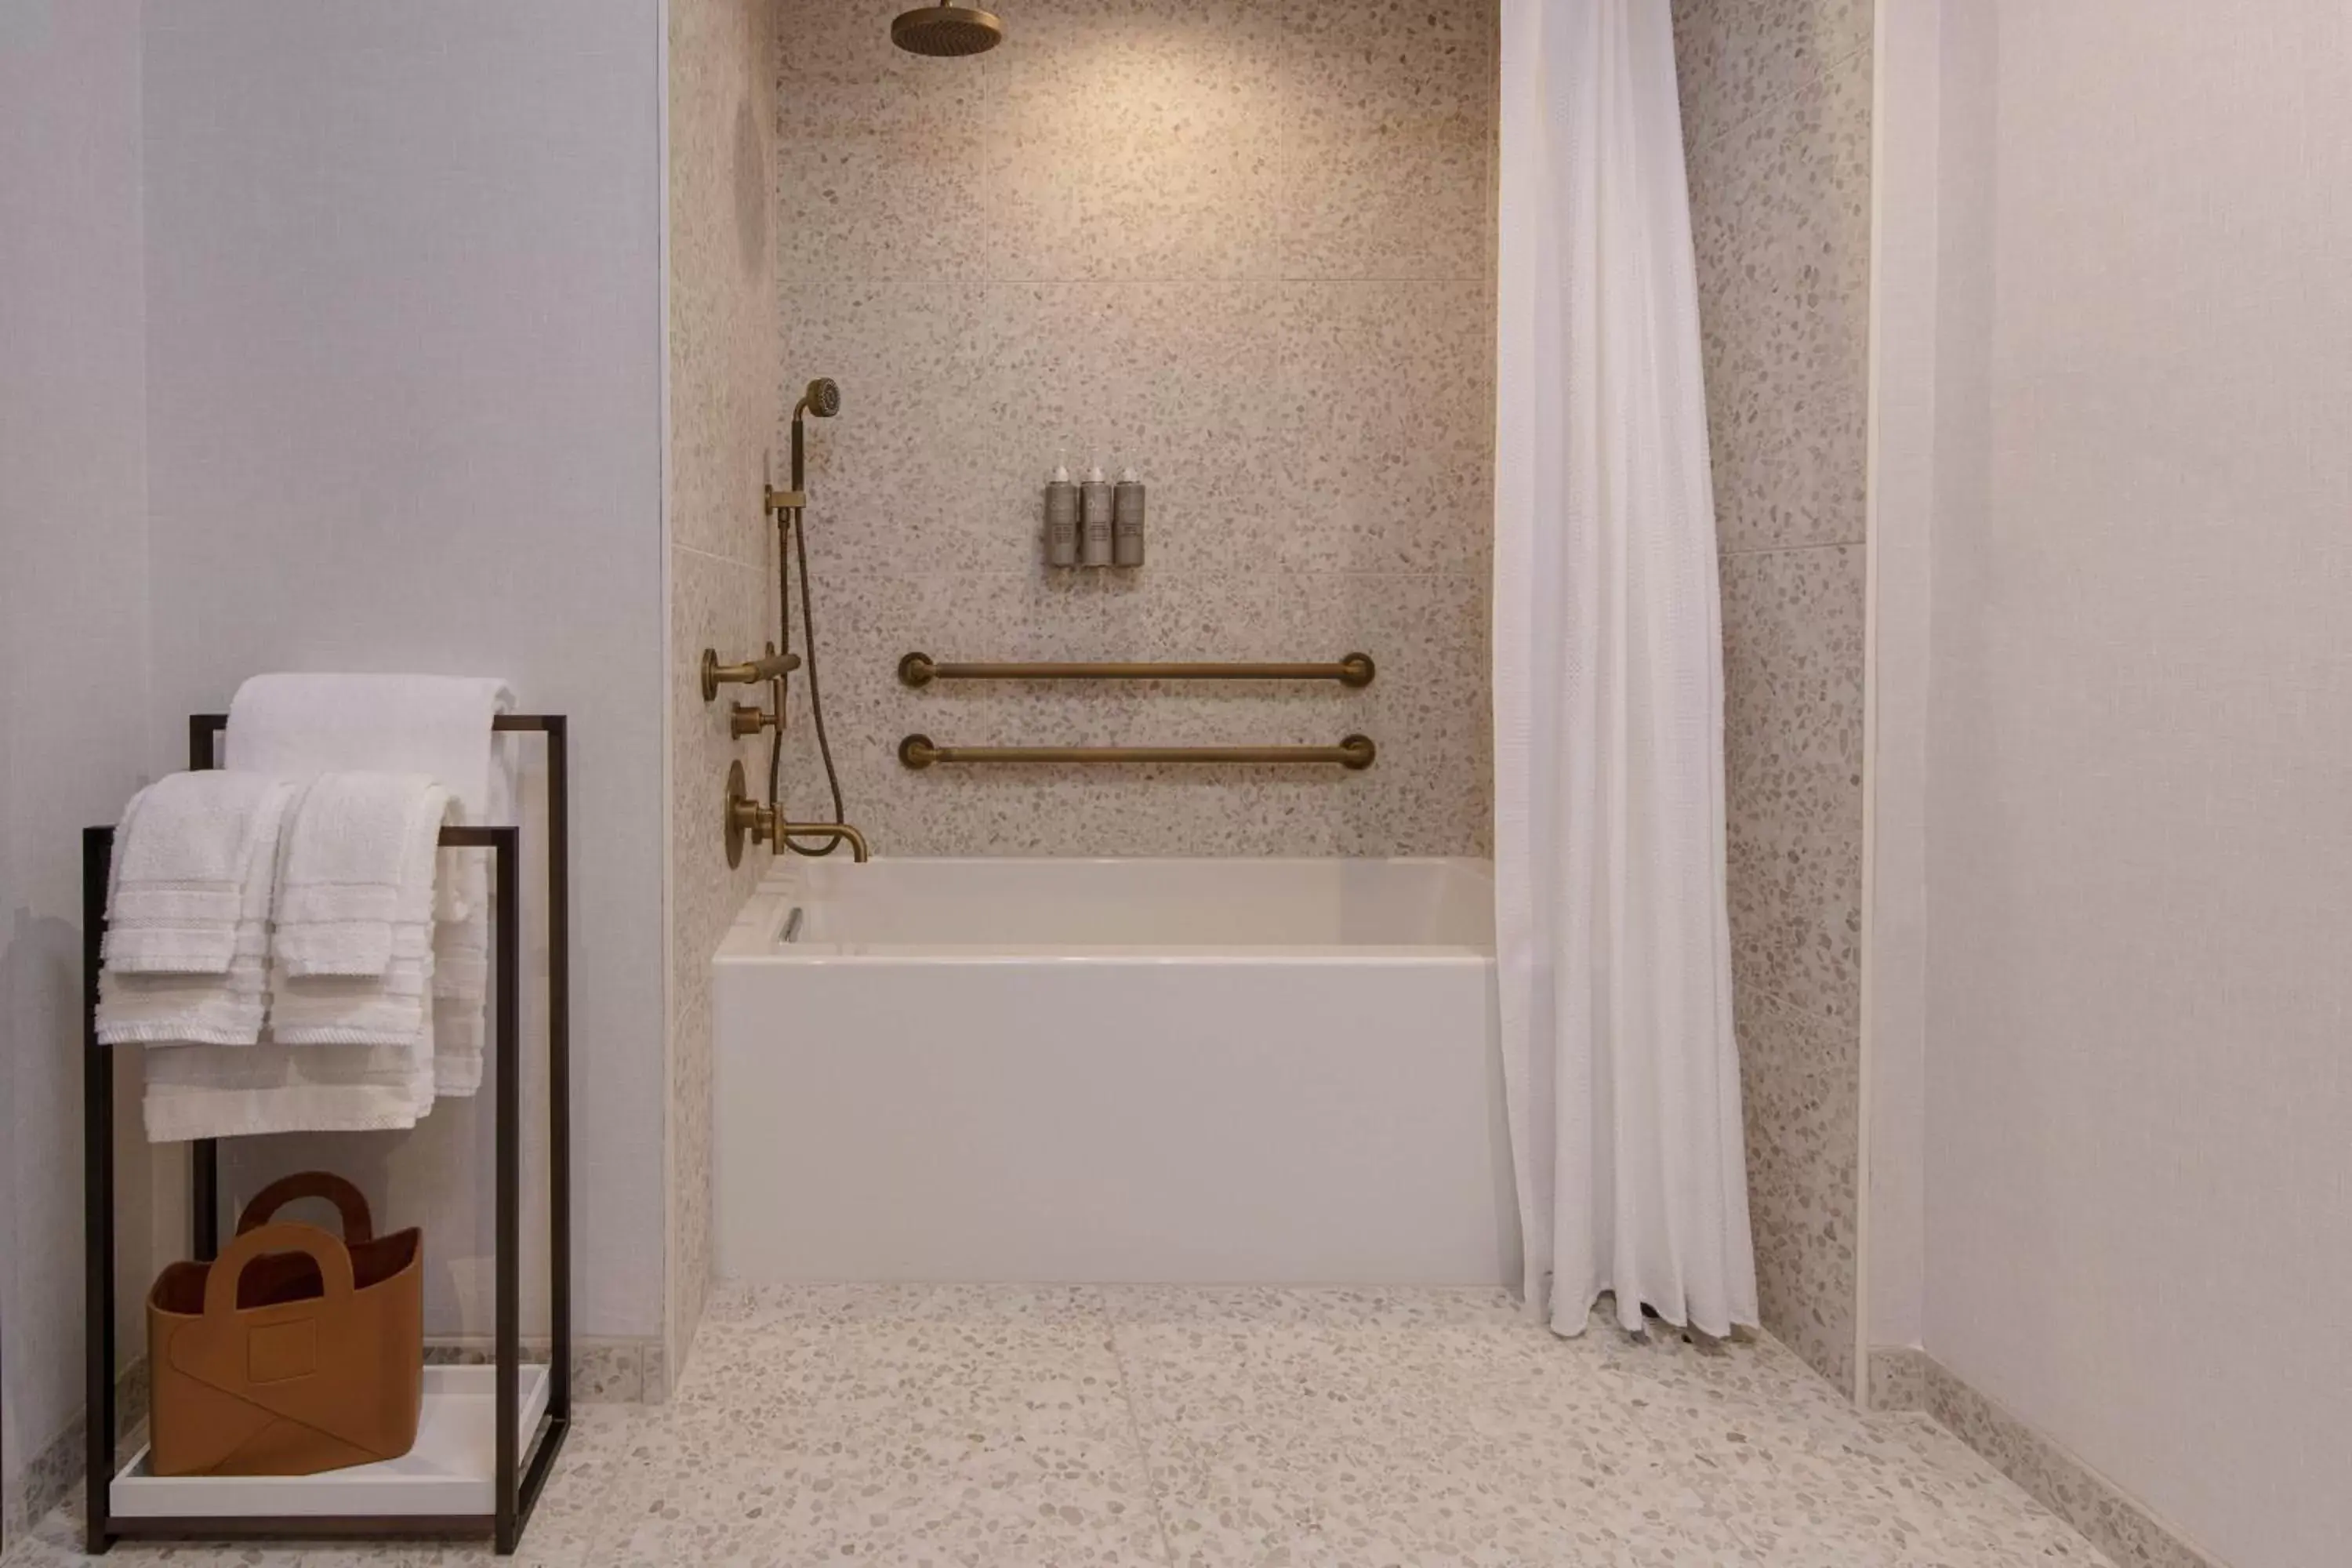 Bathroom in Hotel Citrine, Palo Alto, a Tribute Portfolio Hotel